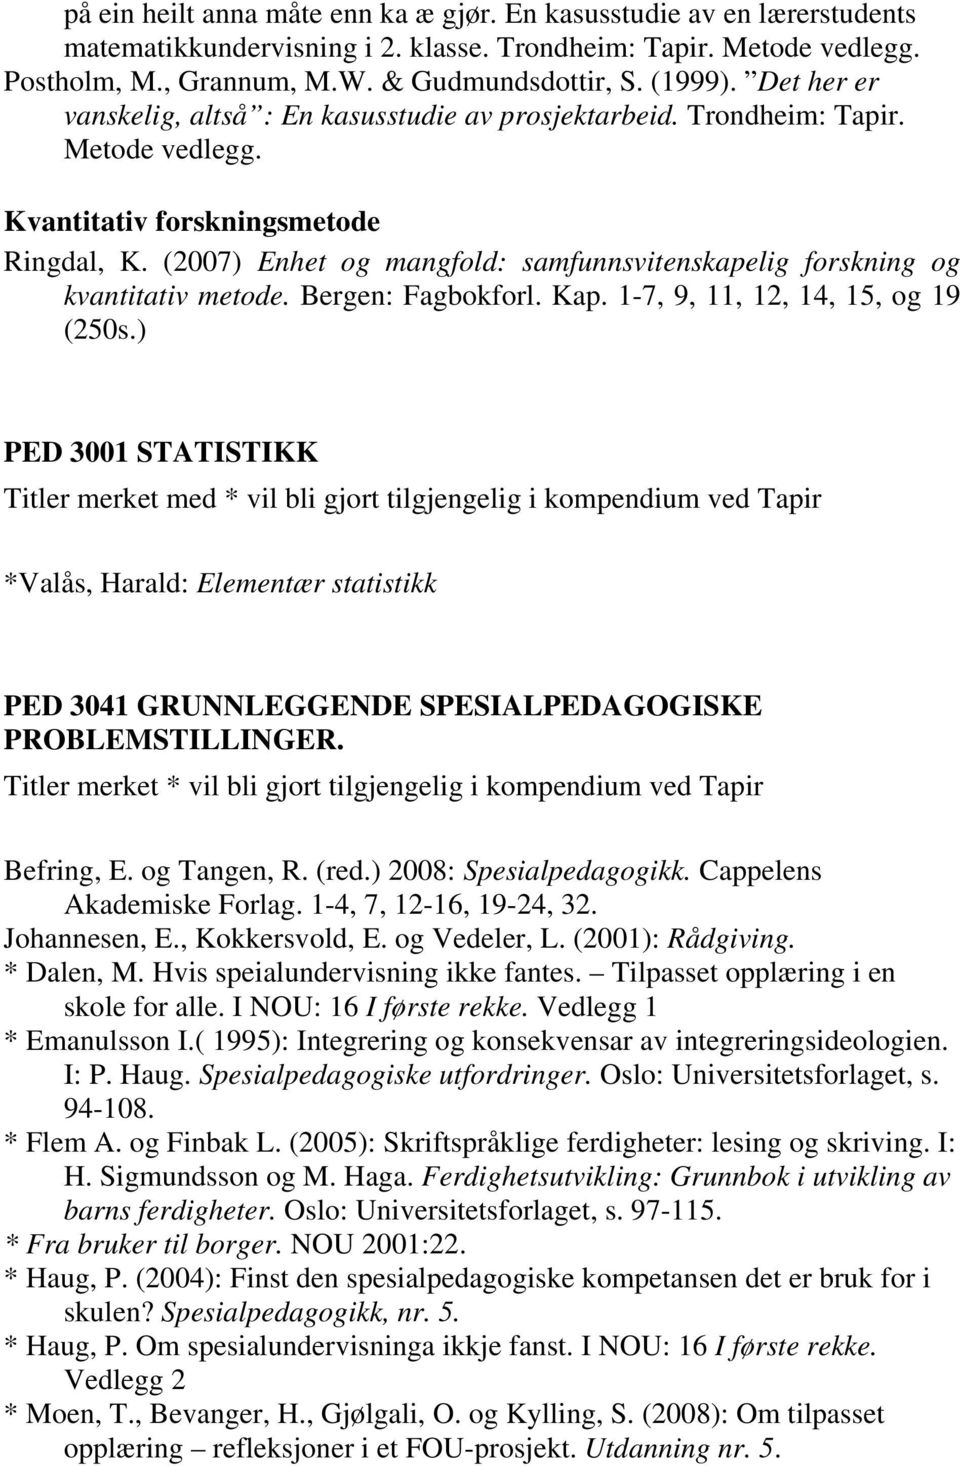 (2007) Enhet og mangfold: samfunnsvitenskapelig forskning og kvantitativ metode. Bergen: Fagbokforl. Kap. 1-7, 9, 11, 12, 14, 15, og 19 (250s.